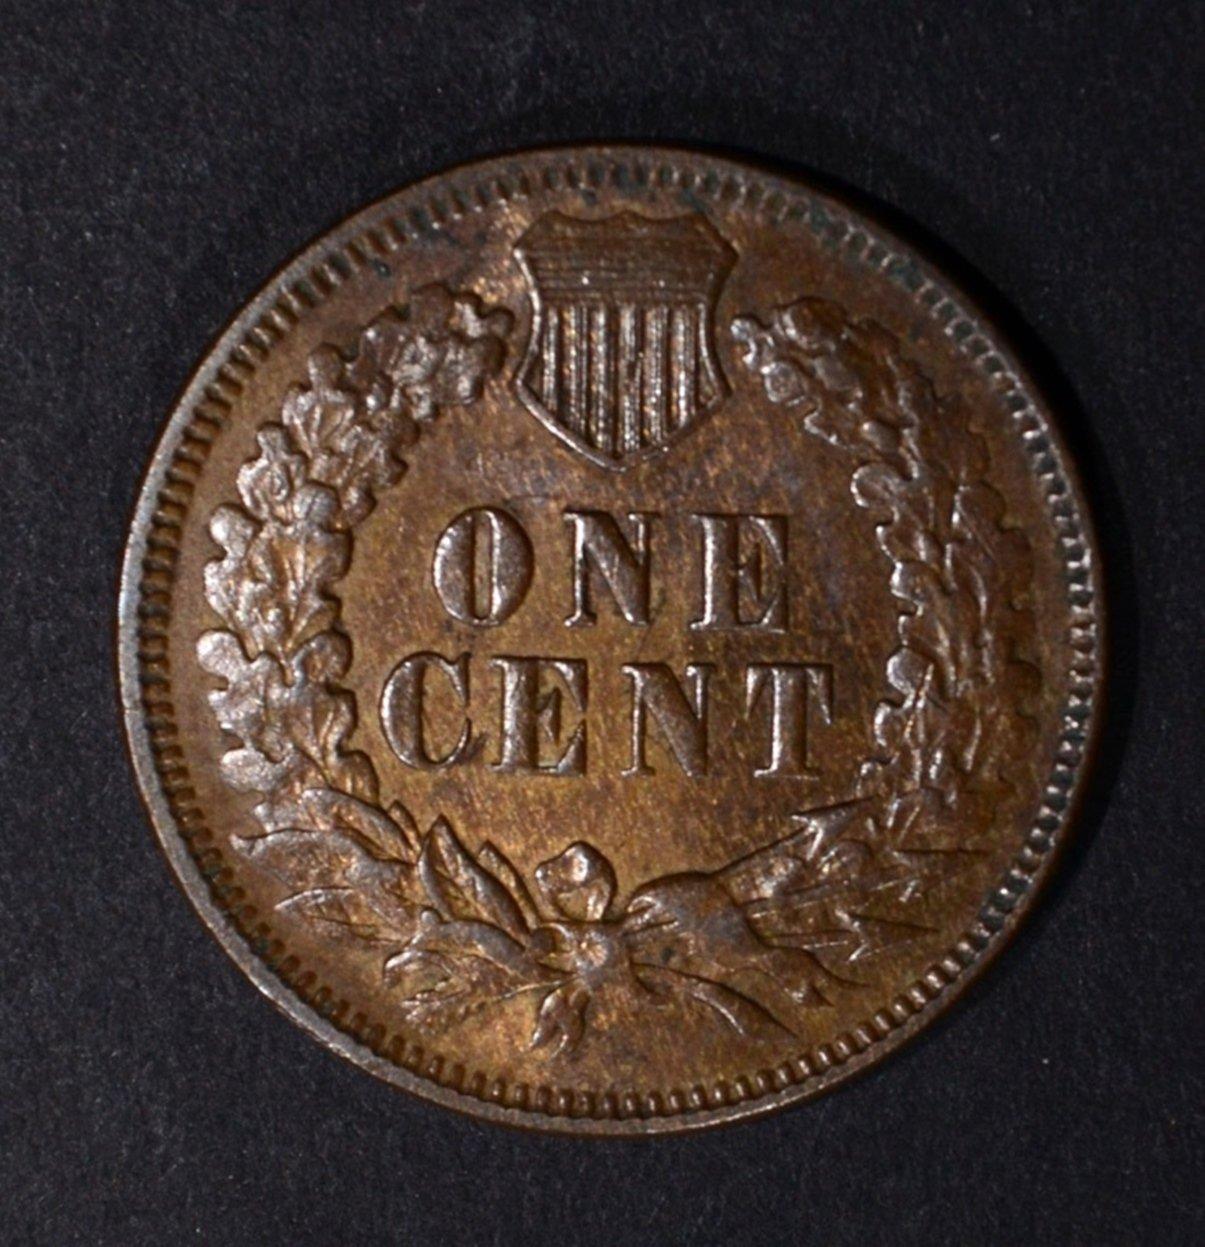 1873 INDIAN HEAD CENT, AU/BU